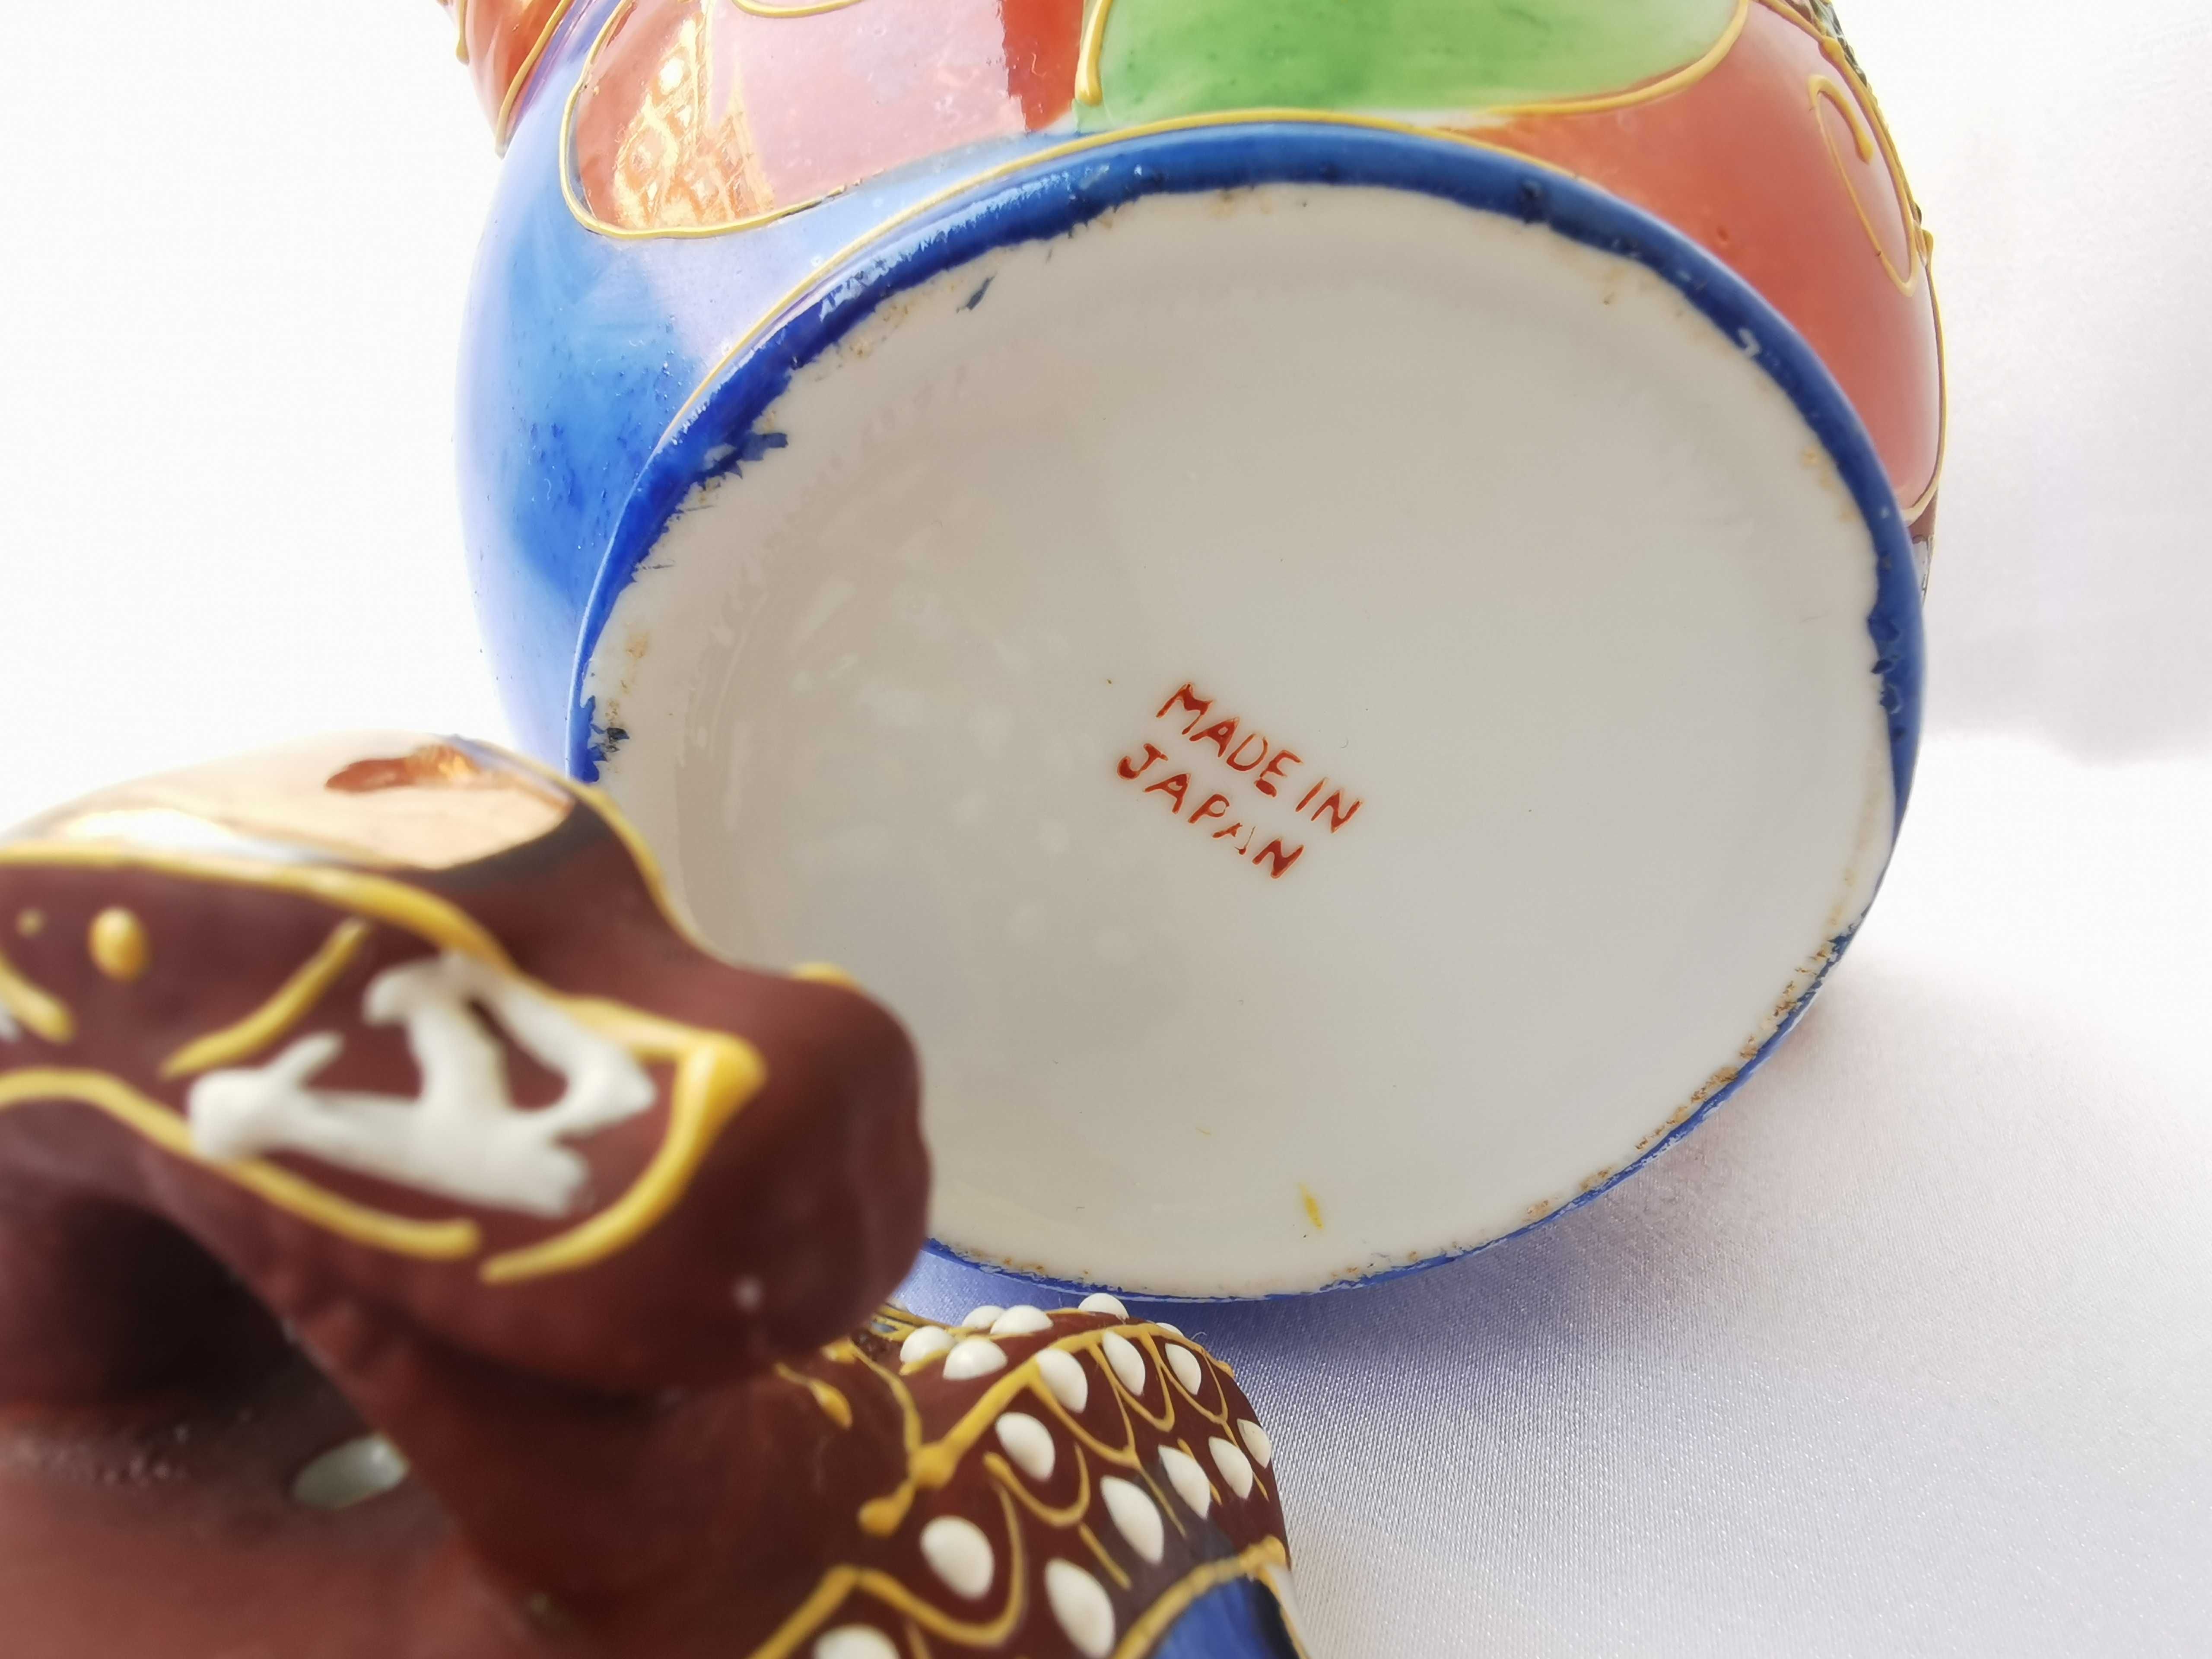 Serviço de CHÁ em porcelana MADE IN JAPAN com 21 peças